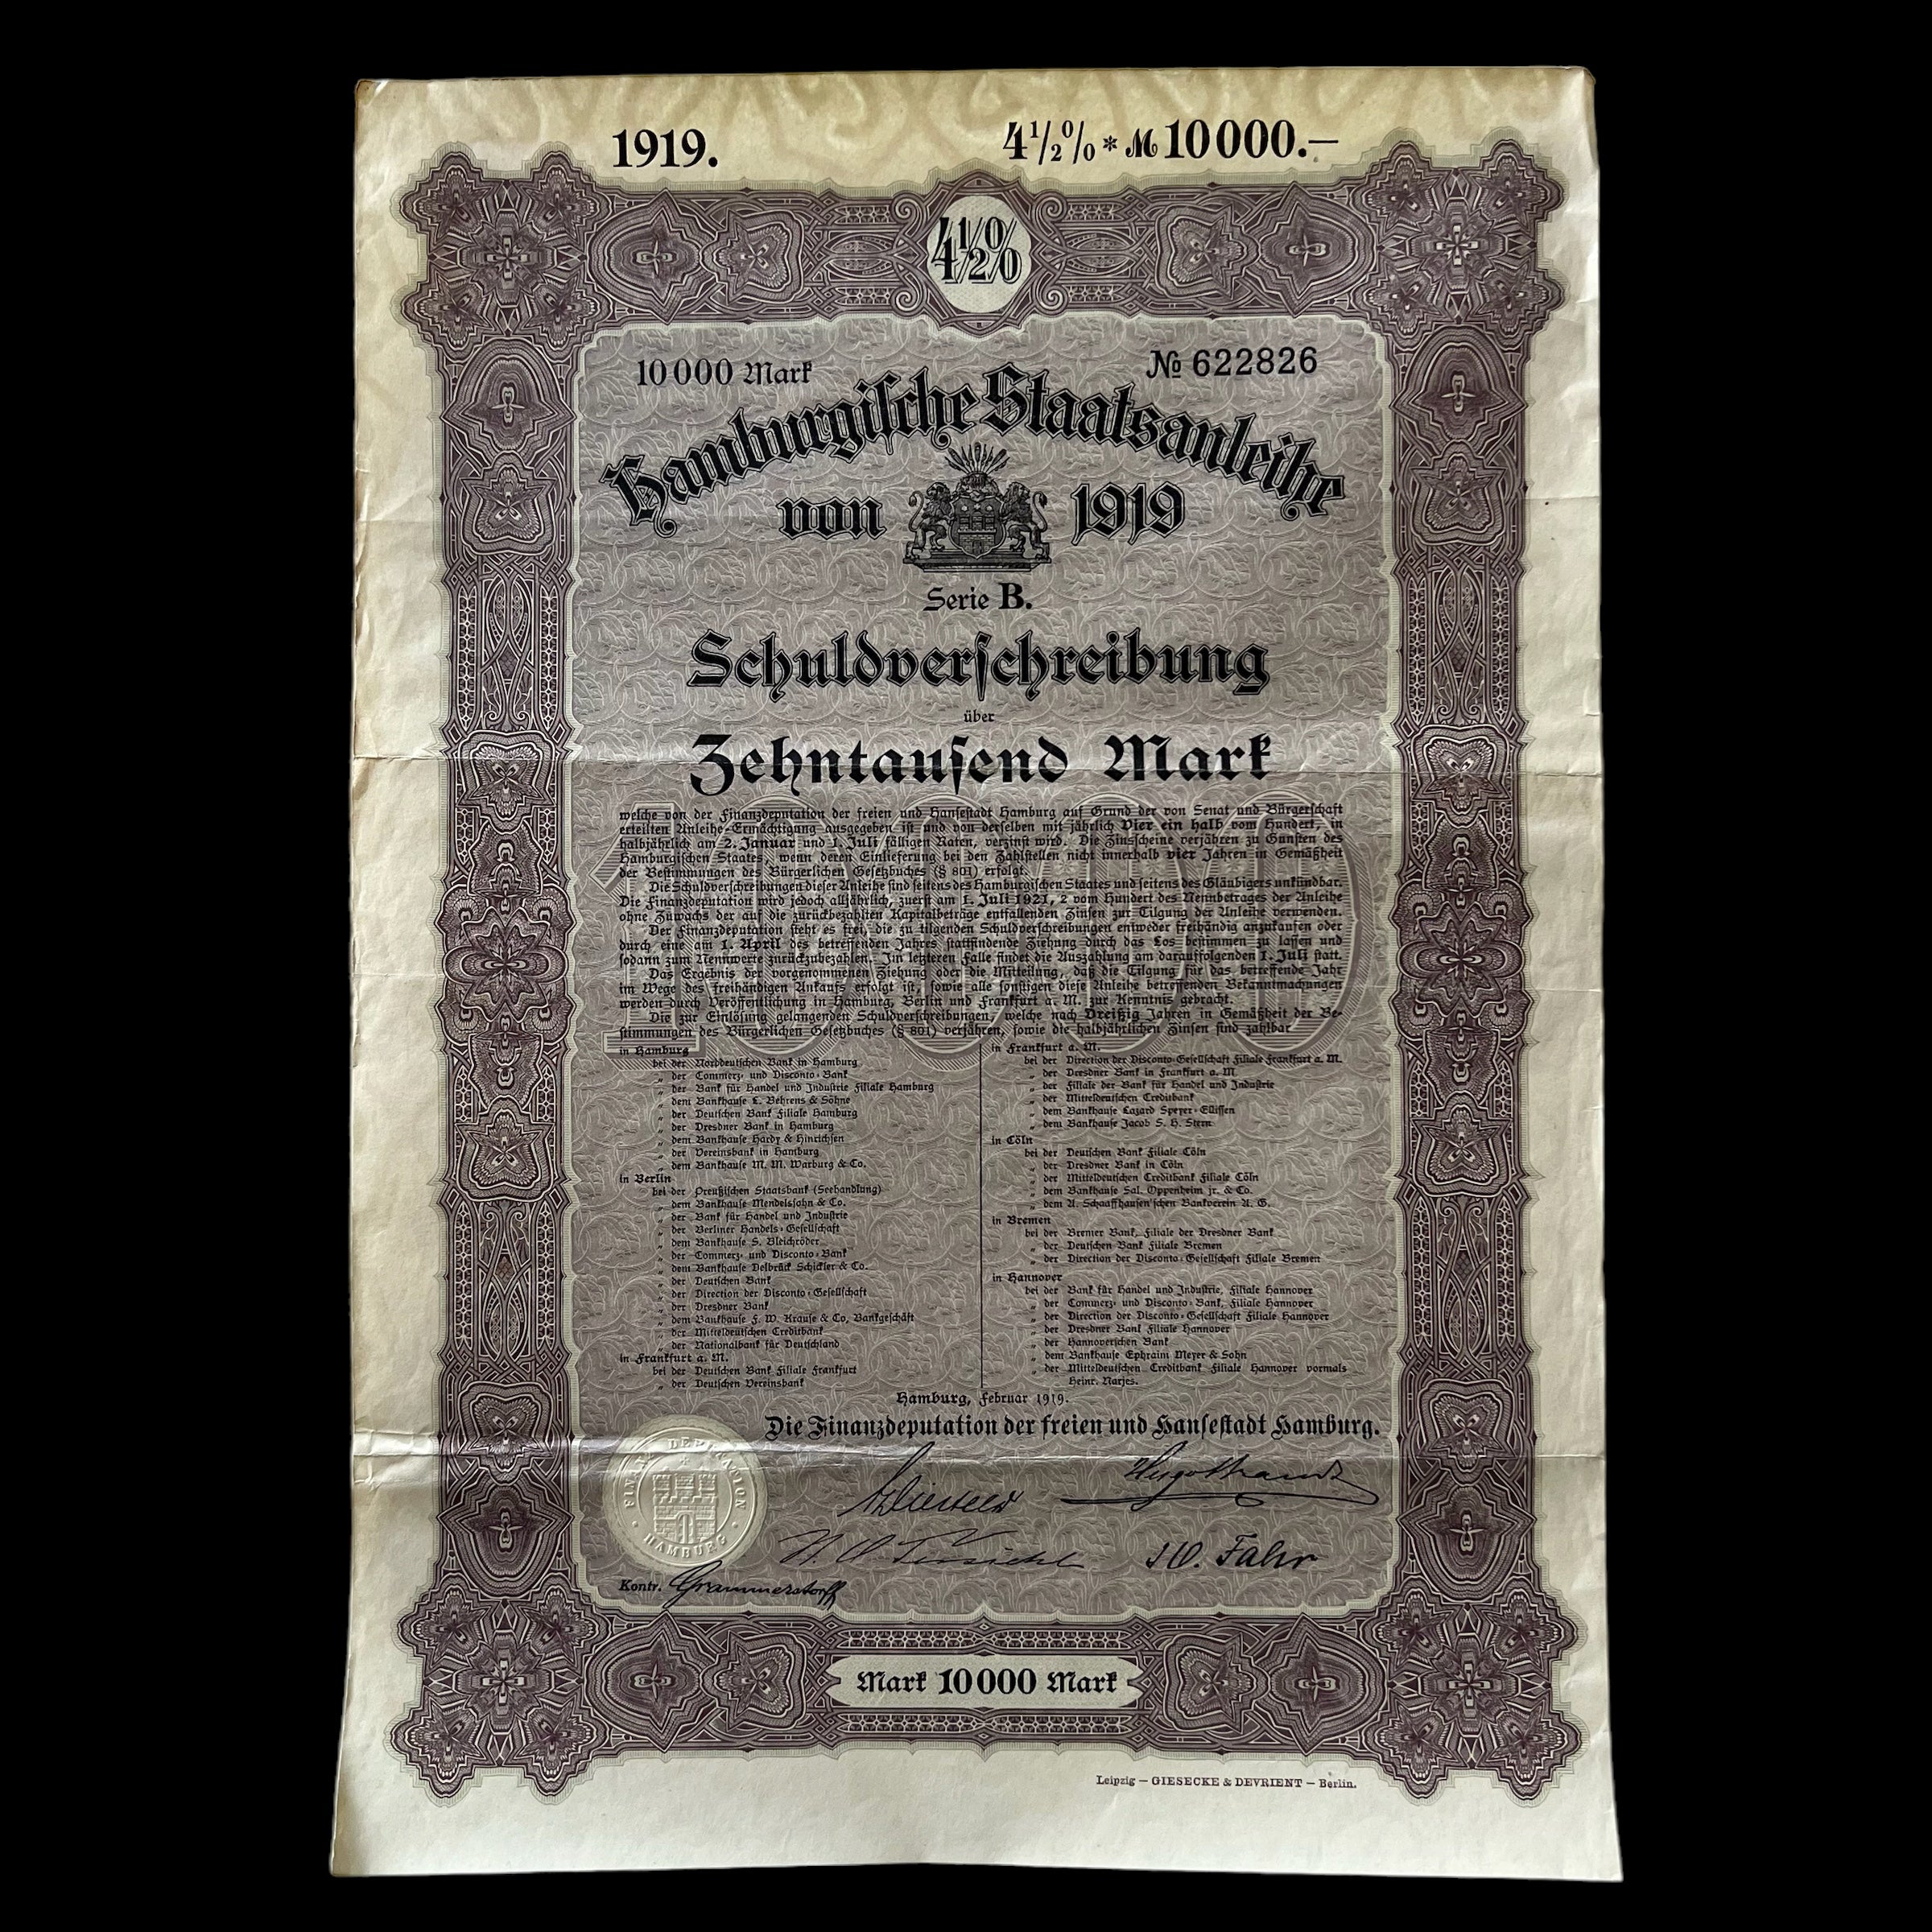 Bono del Estado de Hamburgo de 1919 Bono de 10.000 marcos